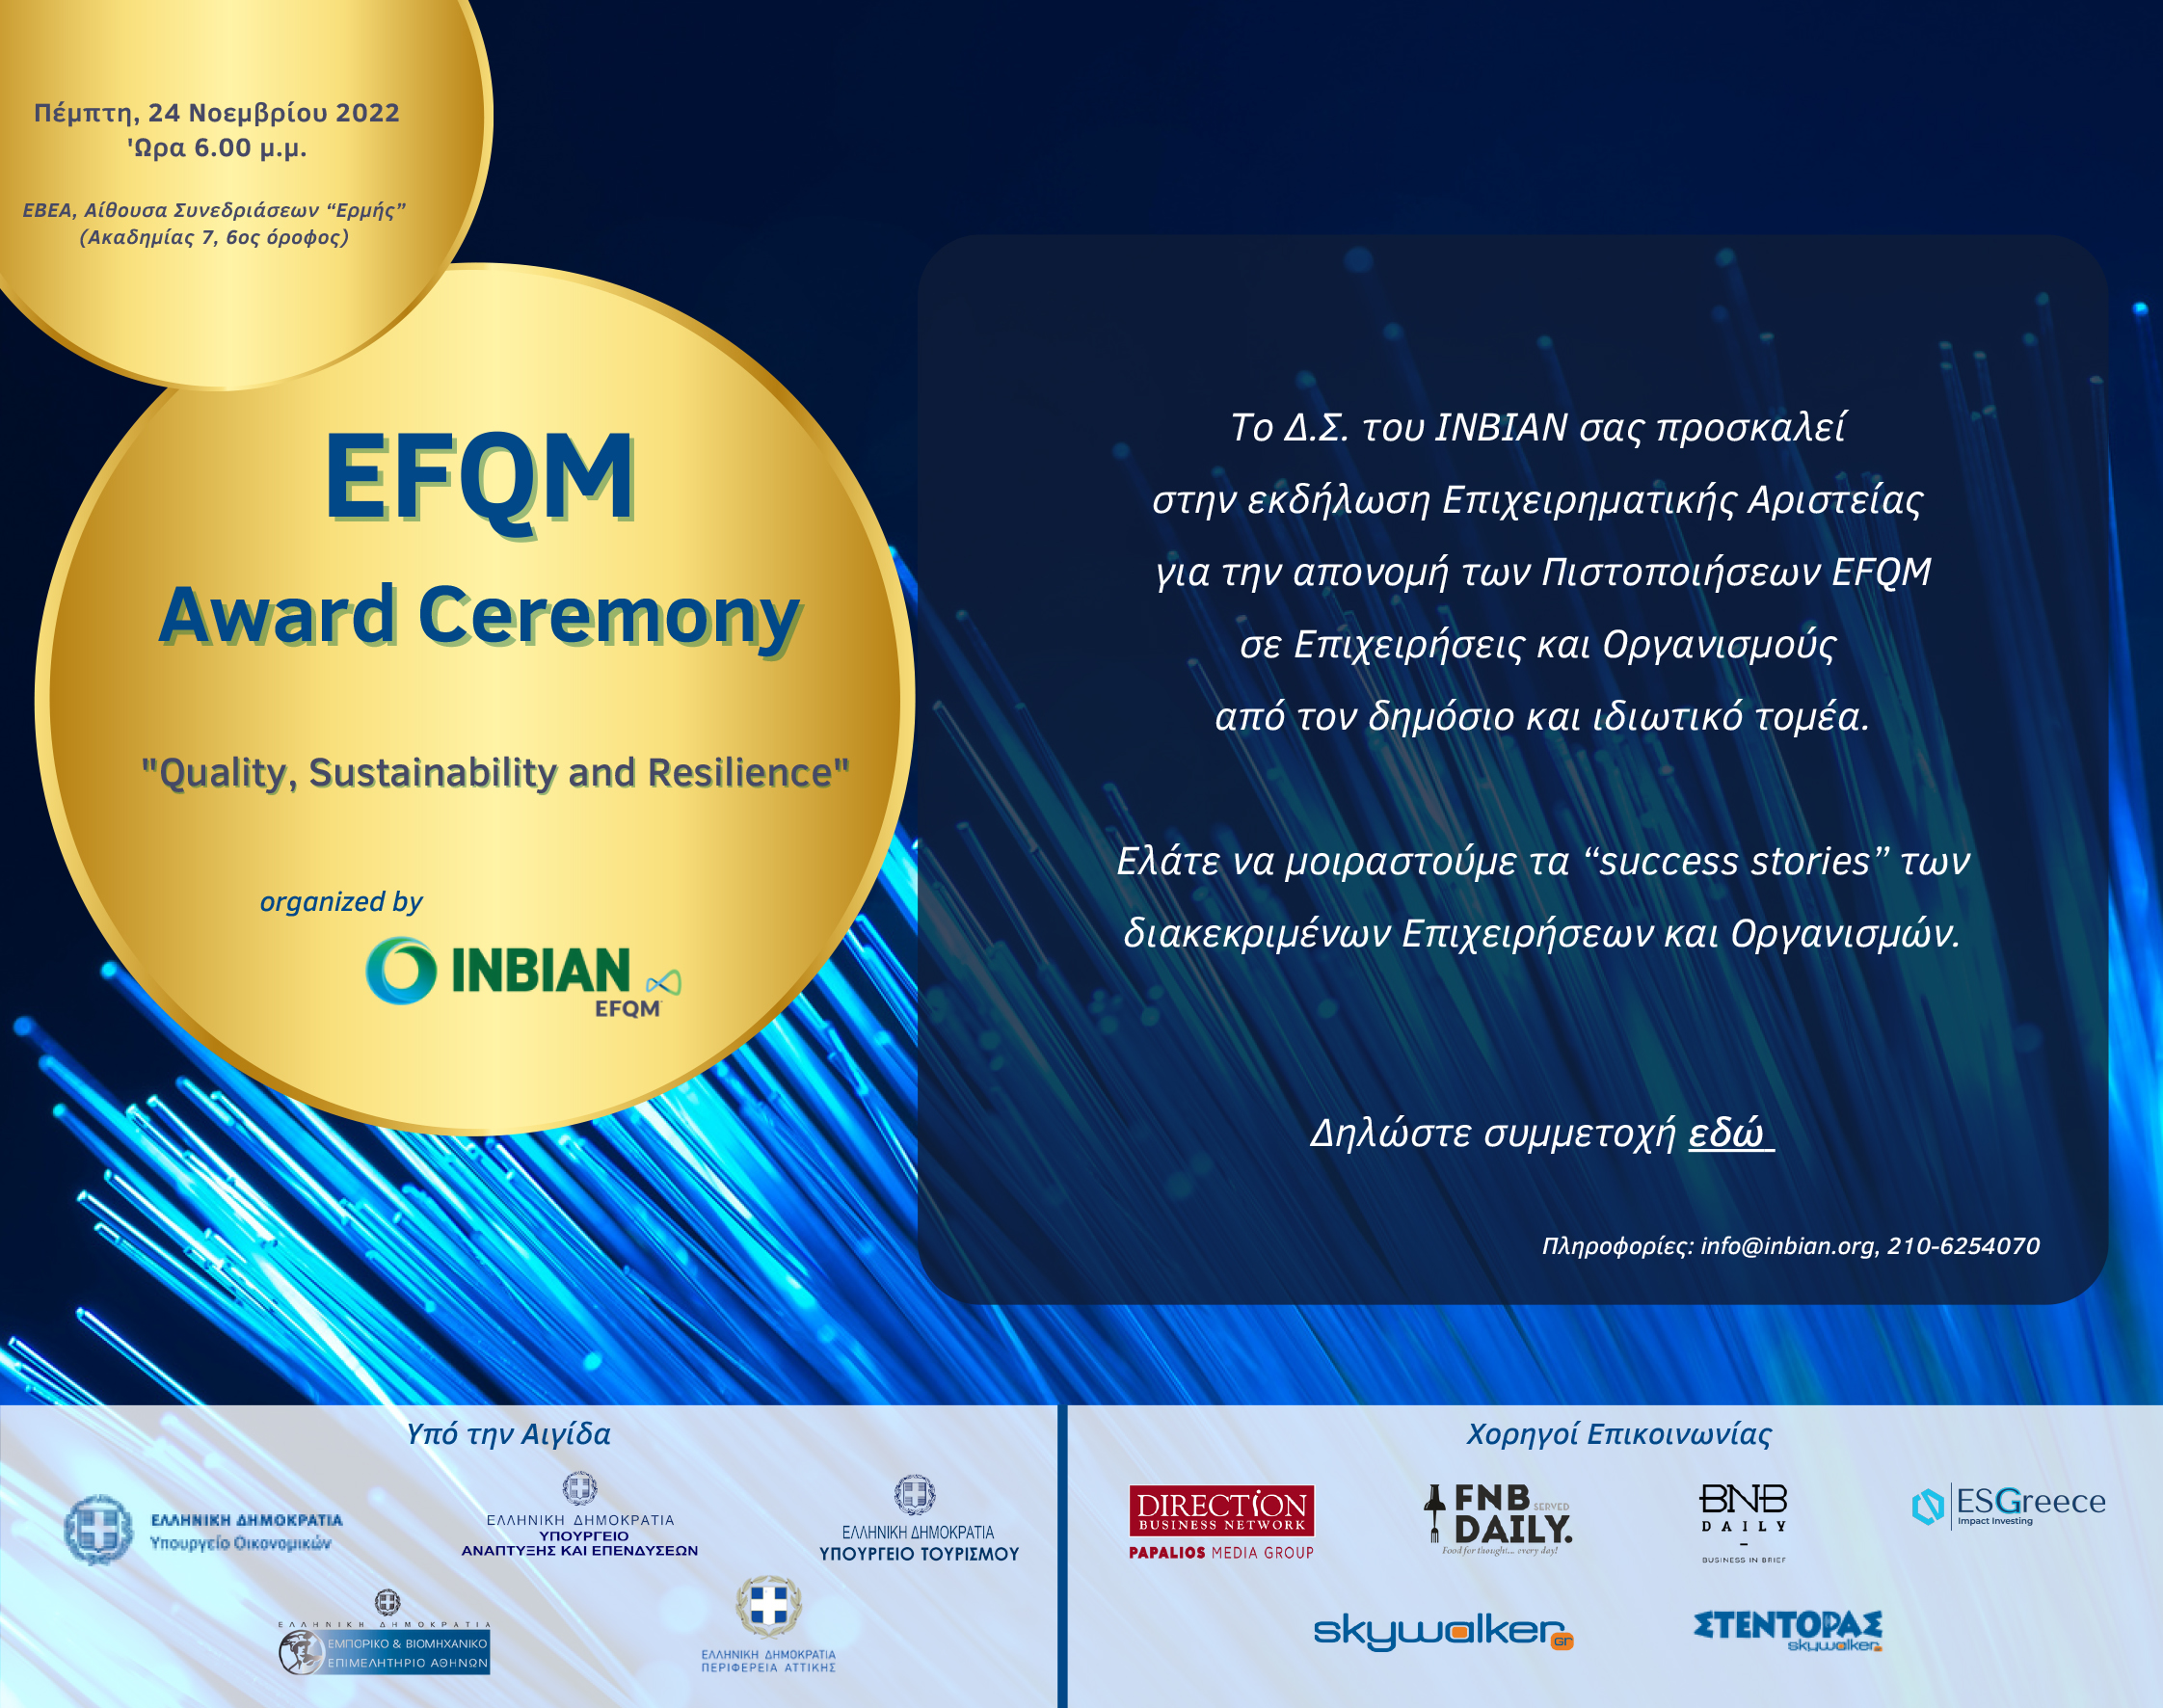 Πρόσκληση για την απονομή των Πιστοποιήσεων EFQM